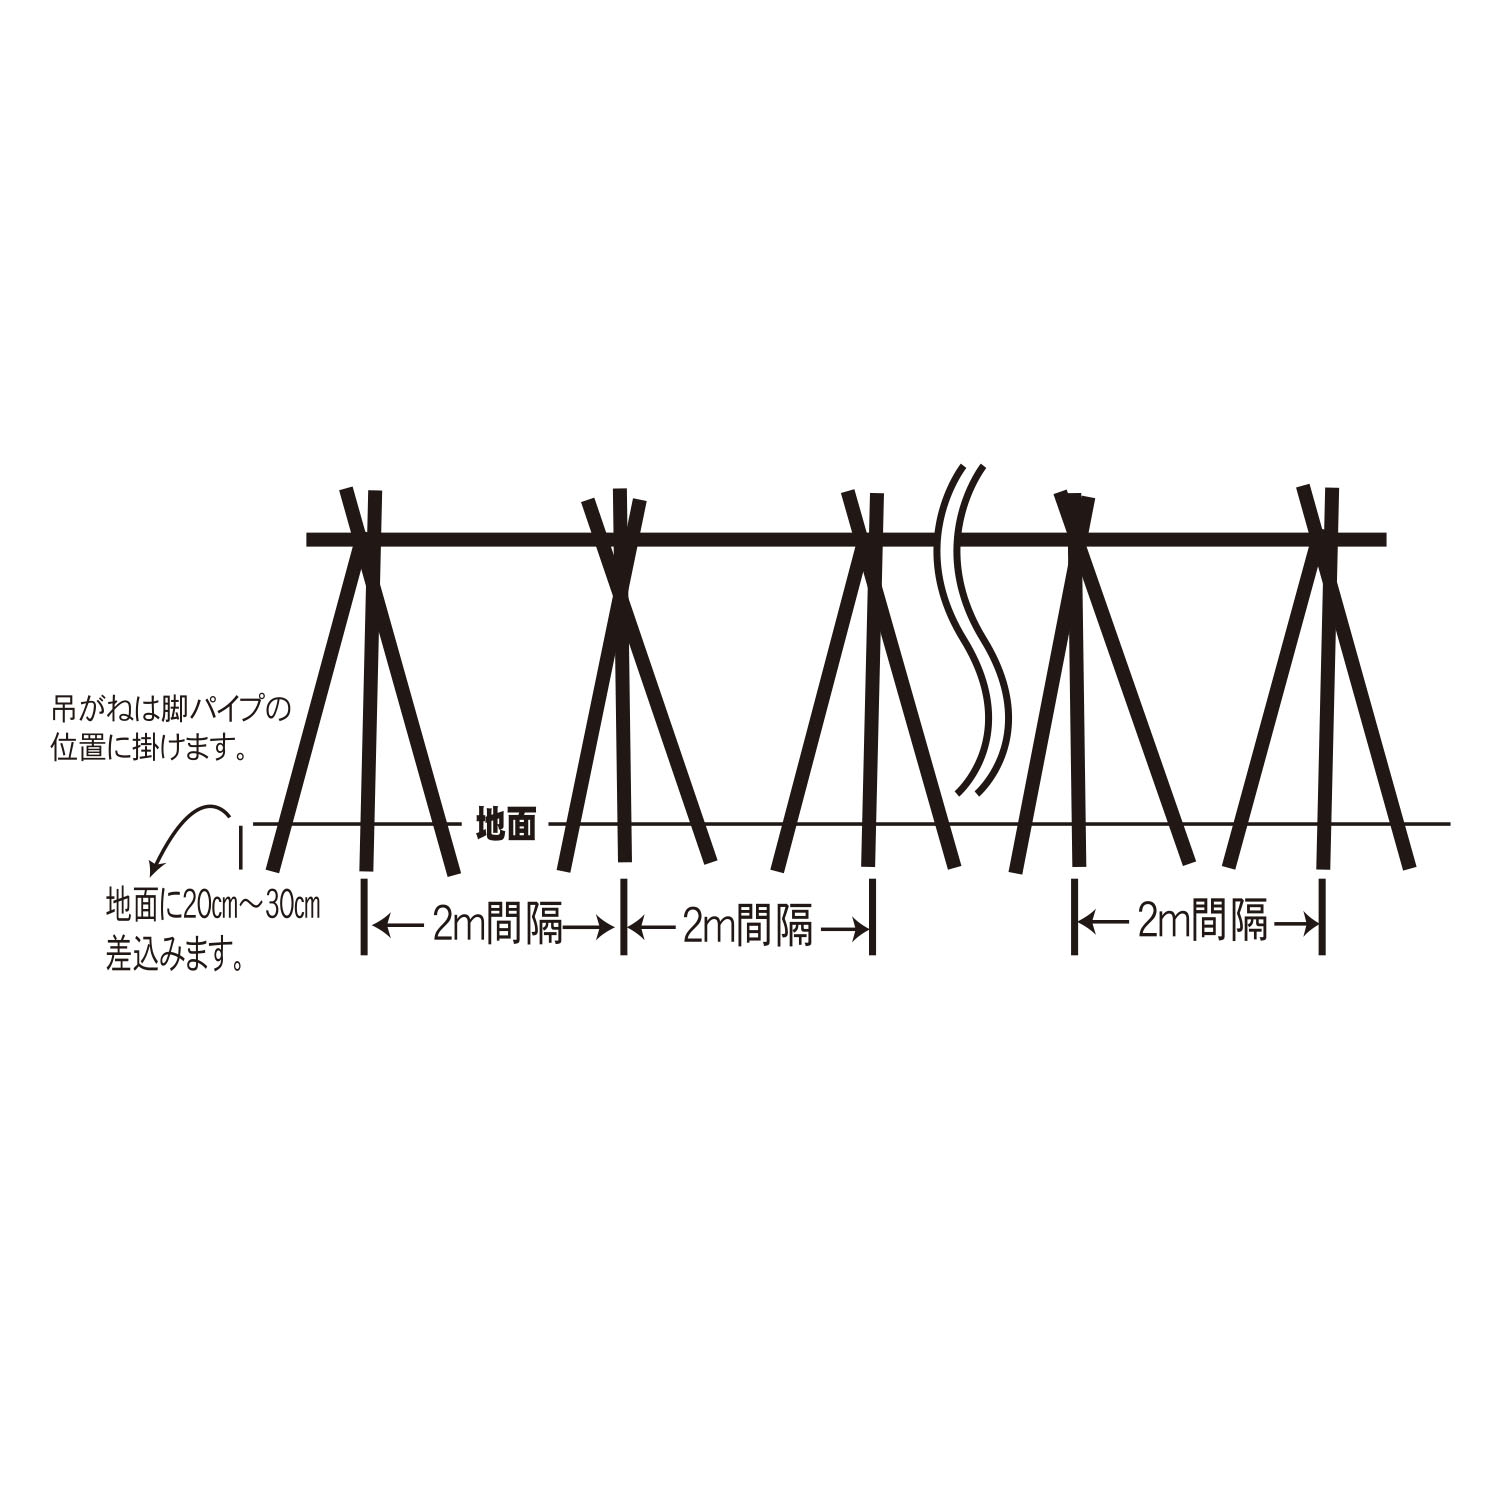 アウトレット☆送料無料 稲の掛け干し ほすべー B-1 三段掛け 1反歩用 10a 約40m分